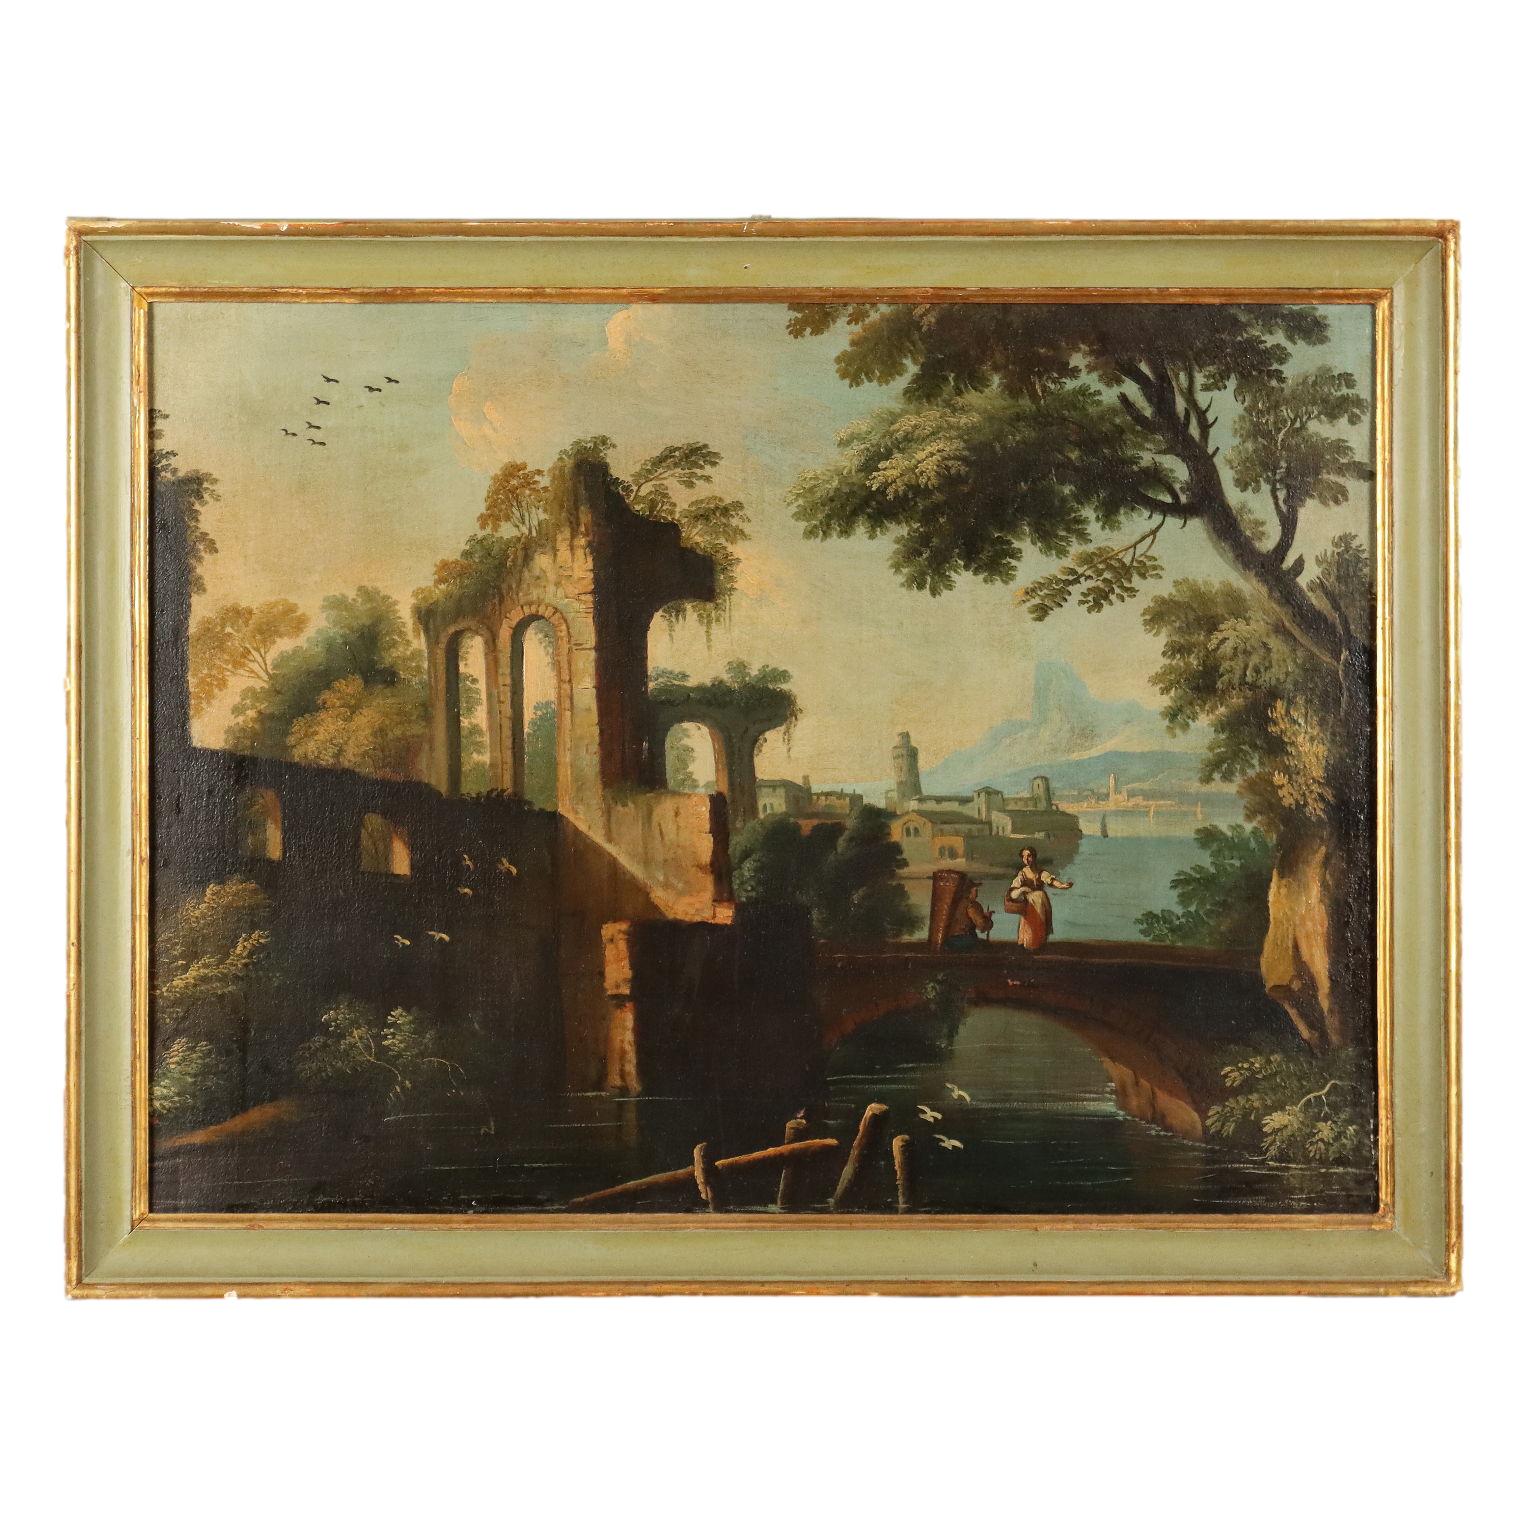 Unknown Landscape Painting - Dipinto  di Paesaggio con Rovine e Figure, XVIII secolo, olio su tela